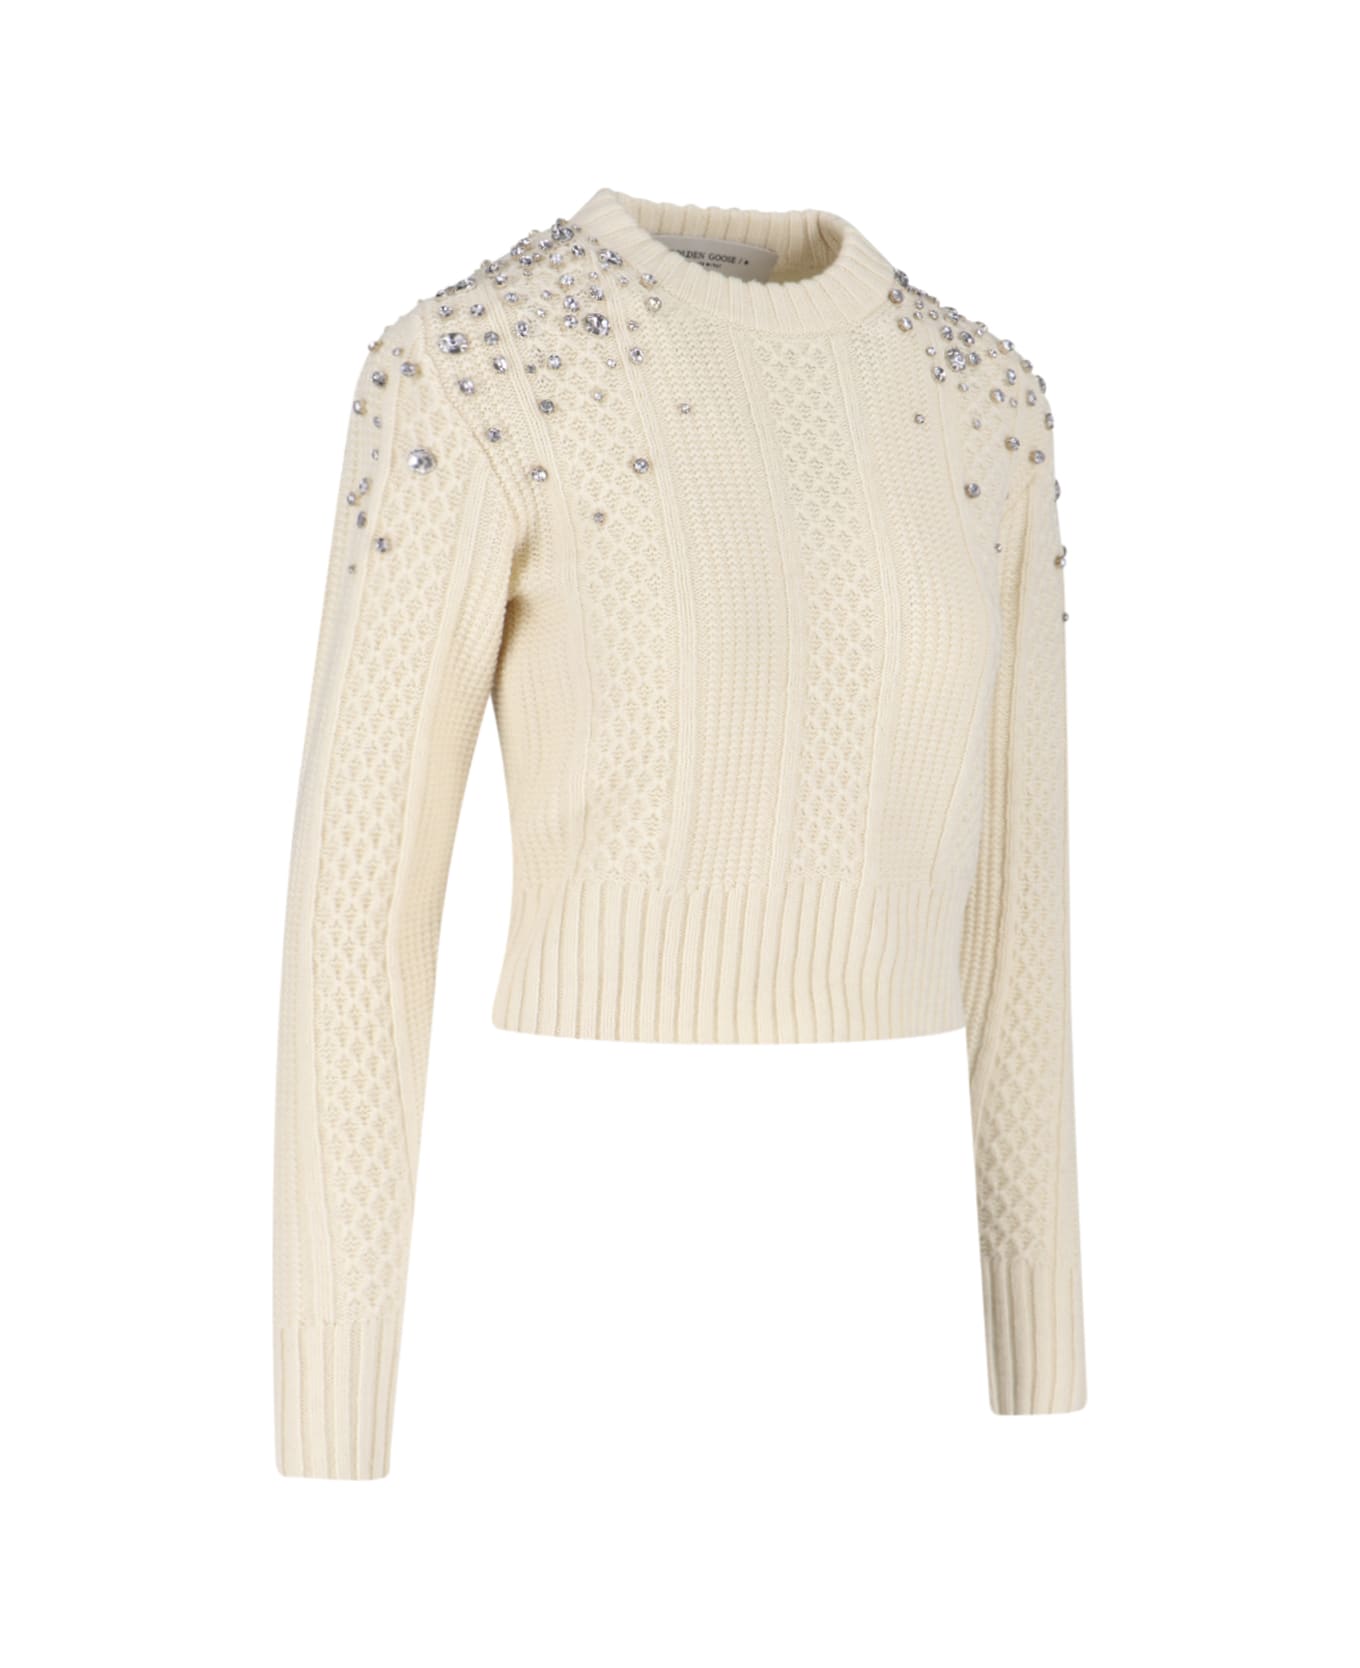 Golden Goose Crystal Crop Sweater - Cream